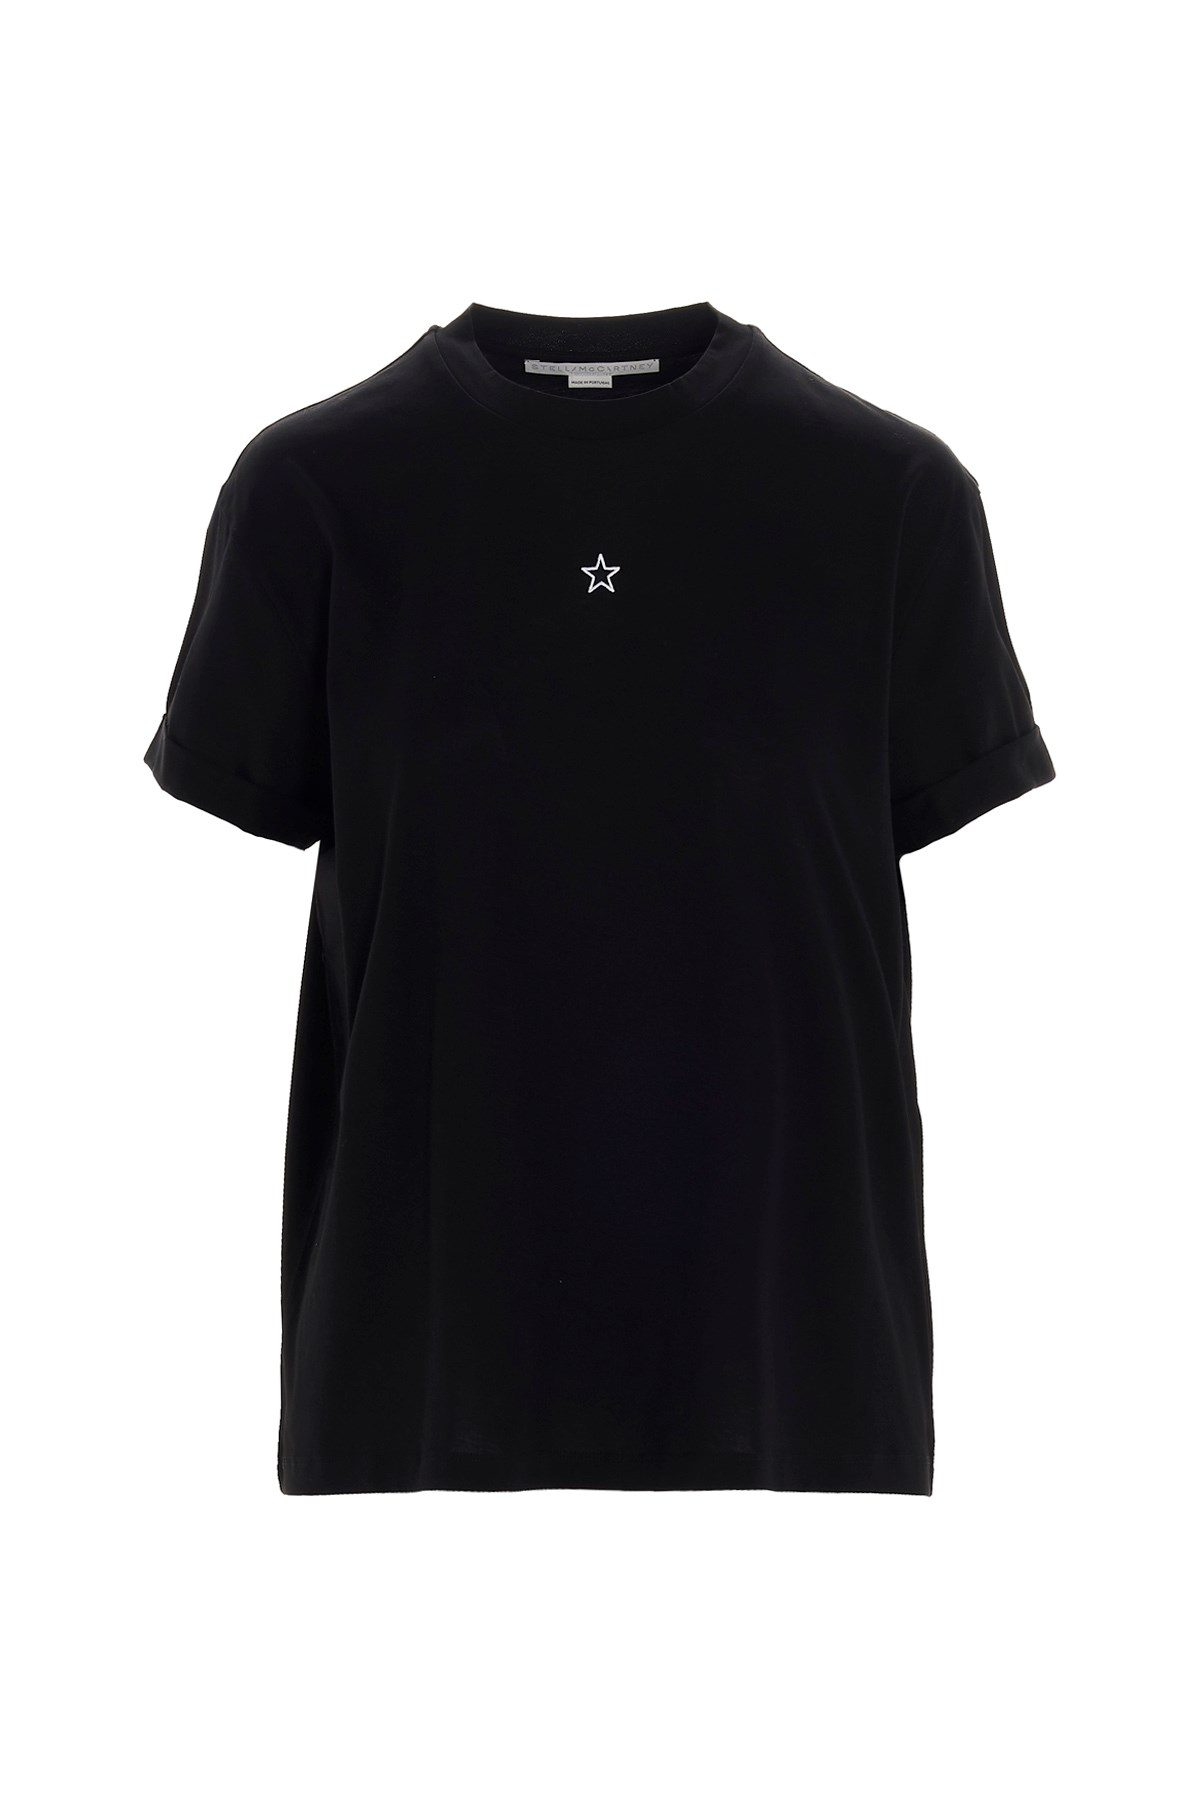 STELLA MCCARTNEY 'Mini Star’ T-Shirt